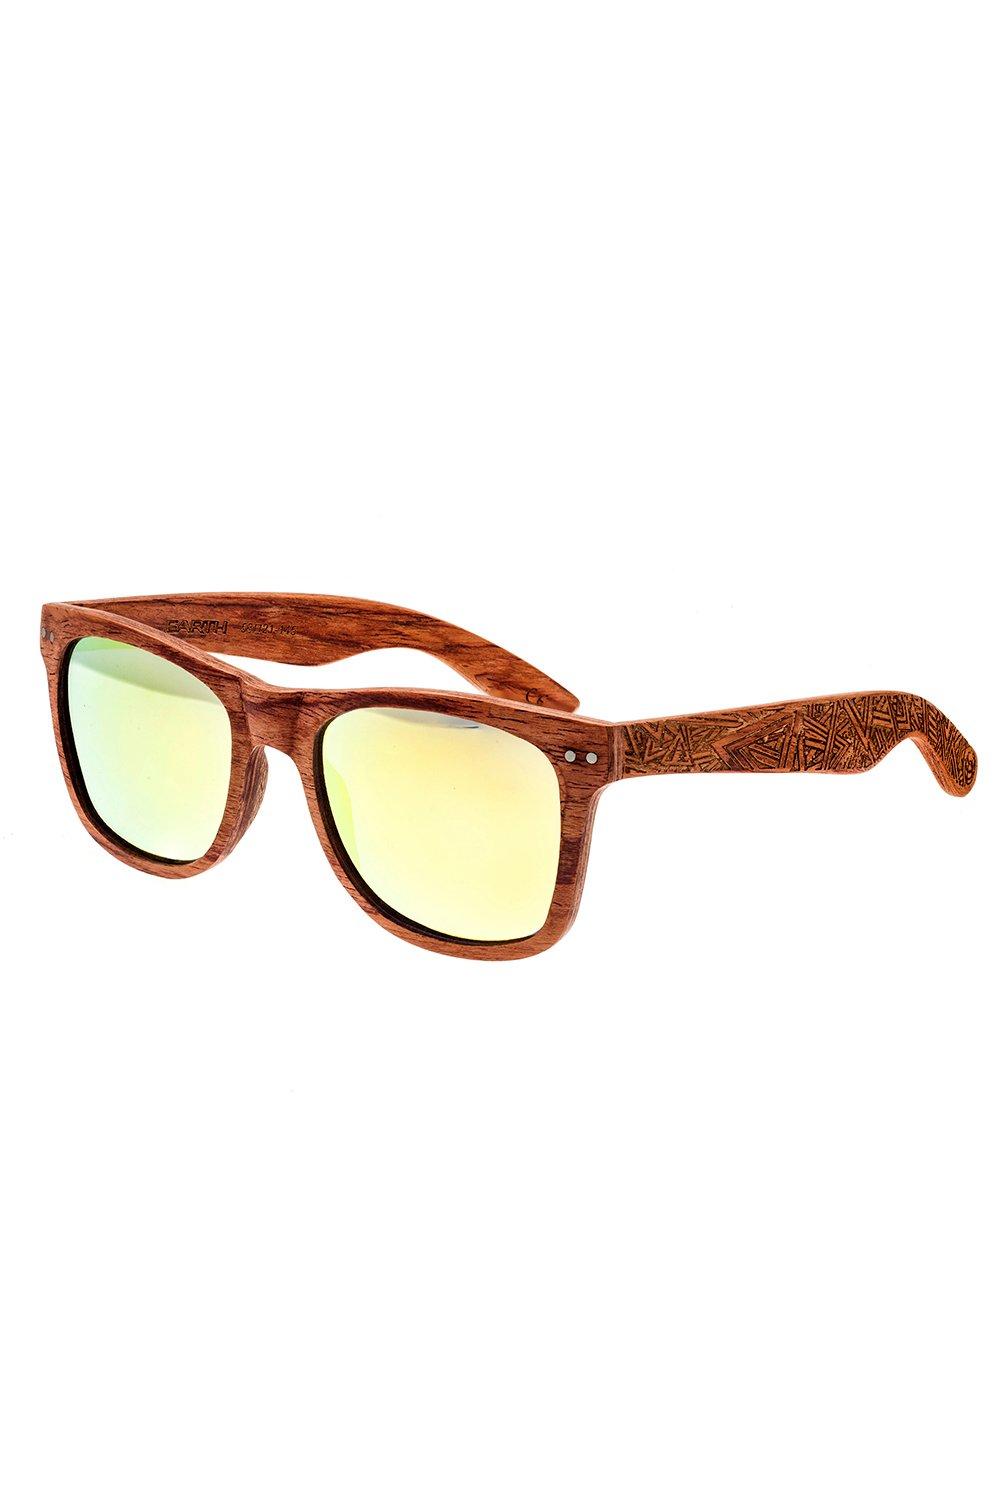 Cape Cod Polarized Sunglasses